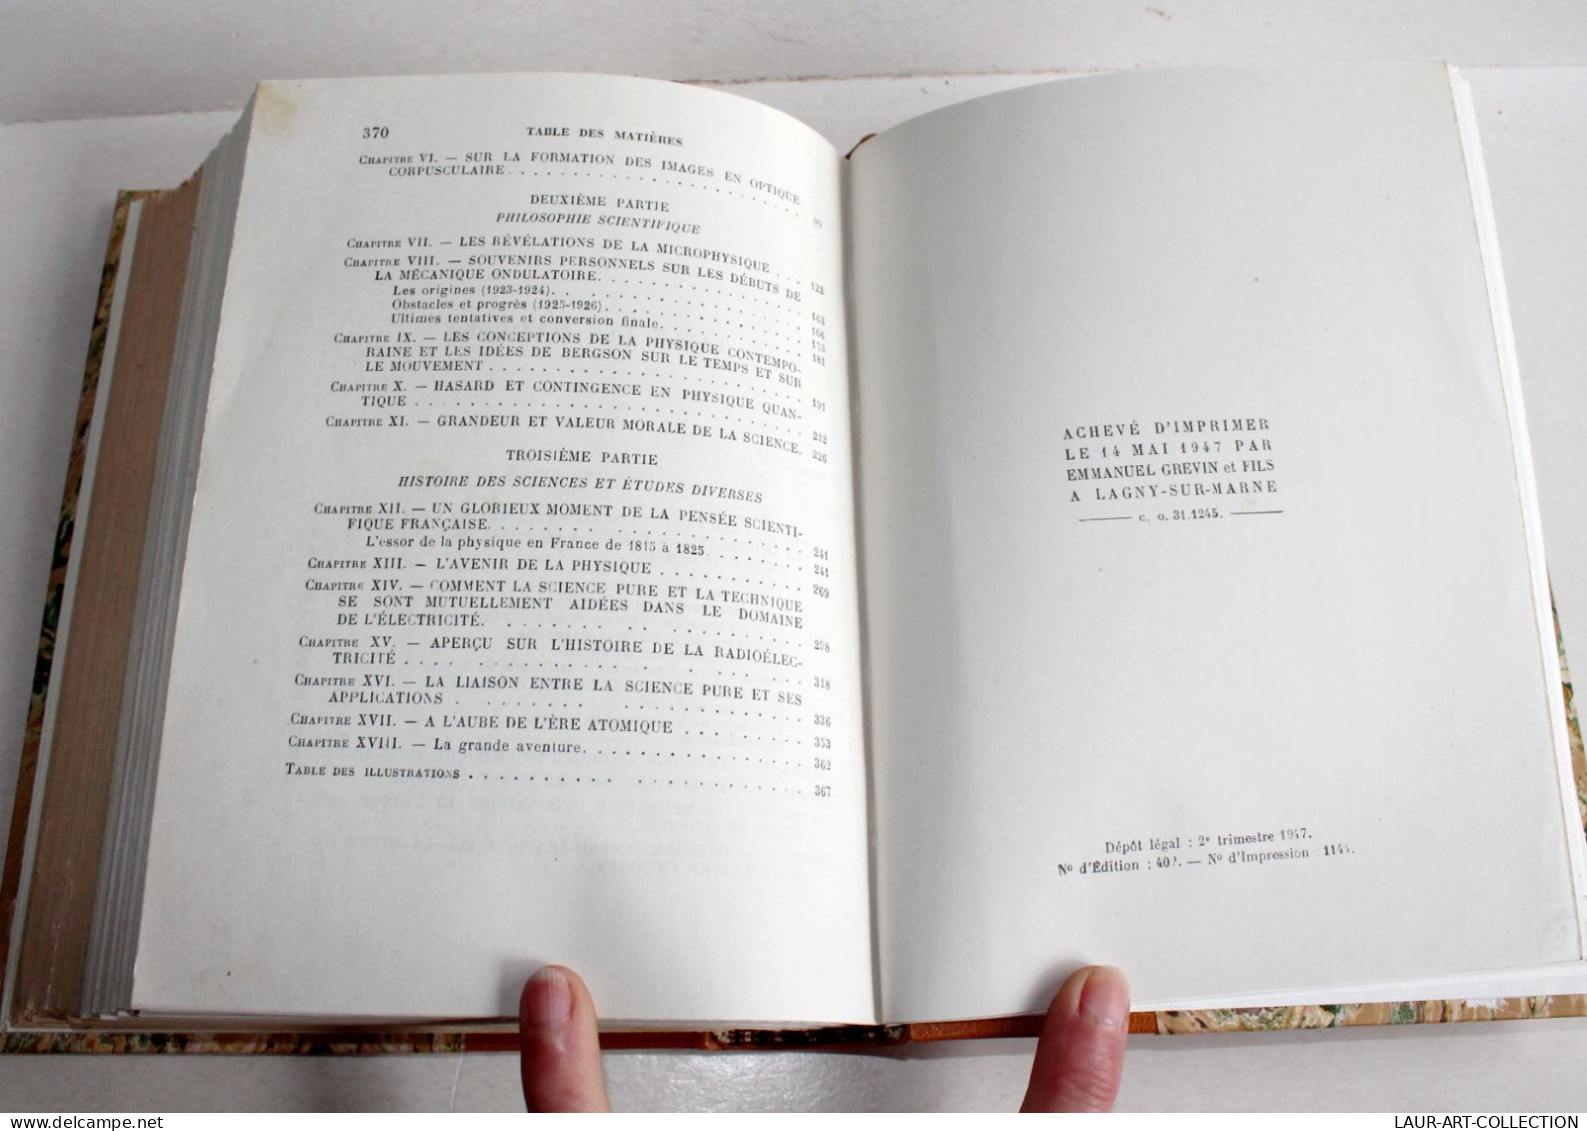 ENVOI D'AUTEUR LOUIS DE BROGLIE + MATIERE & LUMIERE + PHYSIQUE & MICROPHYSIQUE 1937 / ANCIEN LIVRE XXe SIECLE (2204.32)